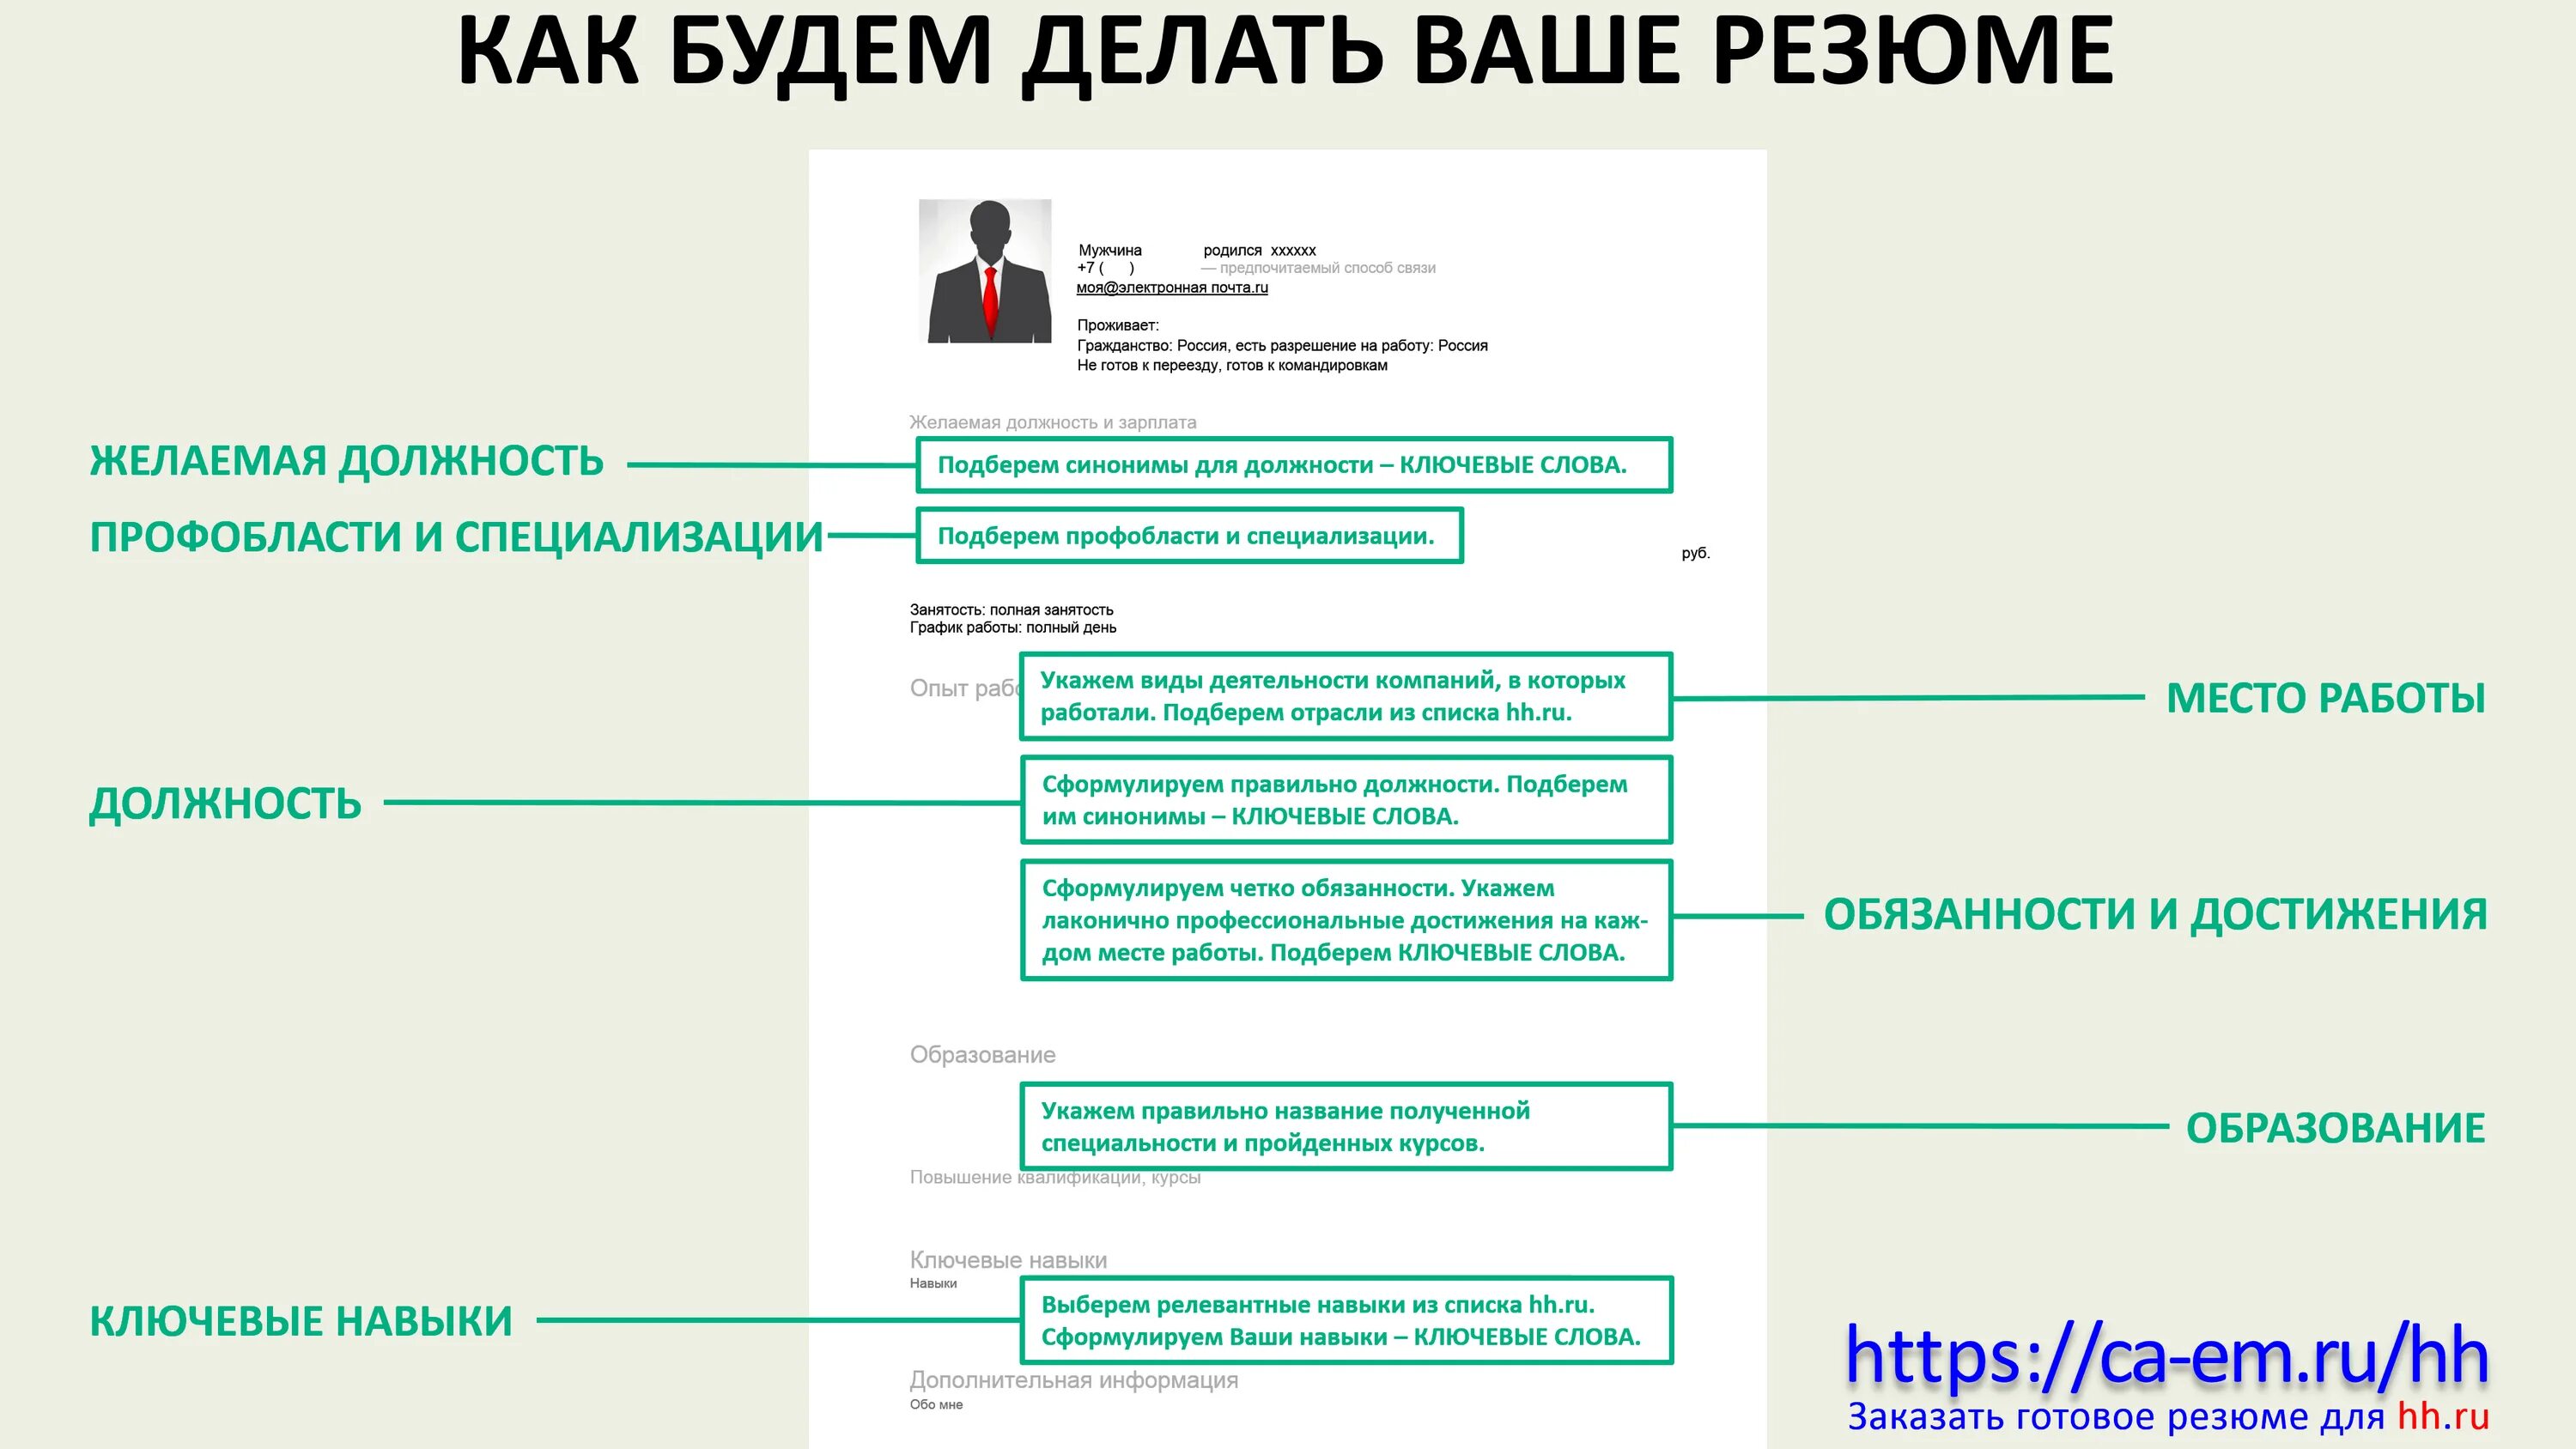 Специалист резюме hh. Резюме образец. Пример резюме. HH.ru резюме. Квалификация в резюме.